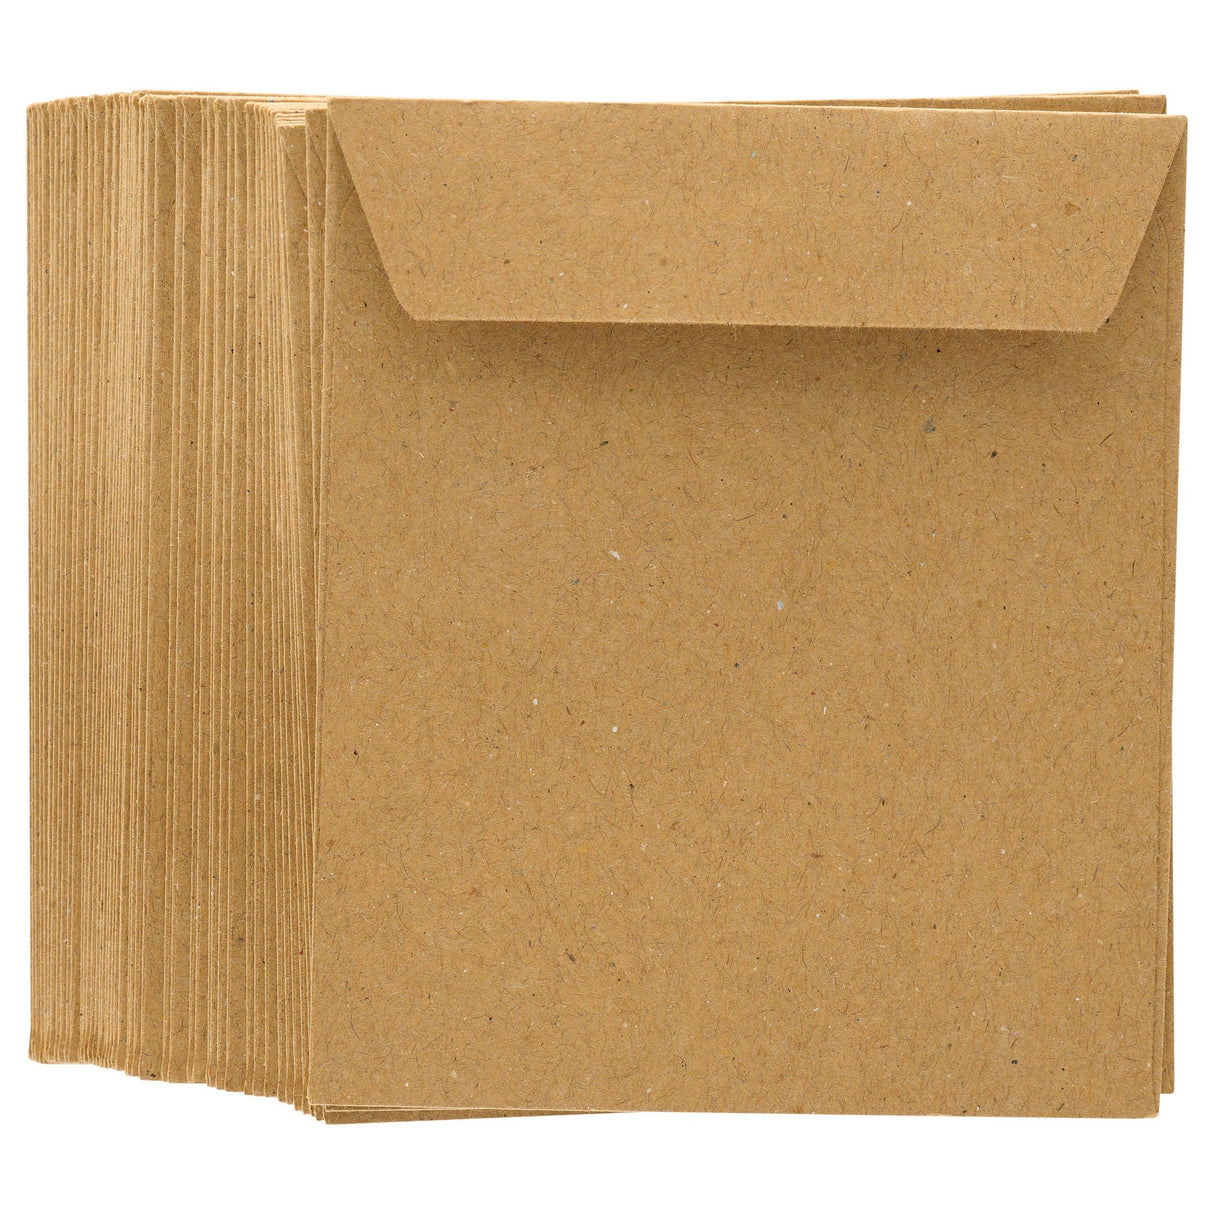 Premail Peel & Seal Wages Envelopes - Manilla - Pack of 50-Envelopes-Premail|StationeryShop.co.uk